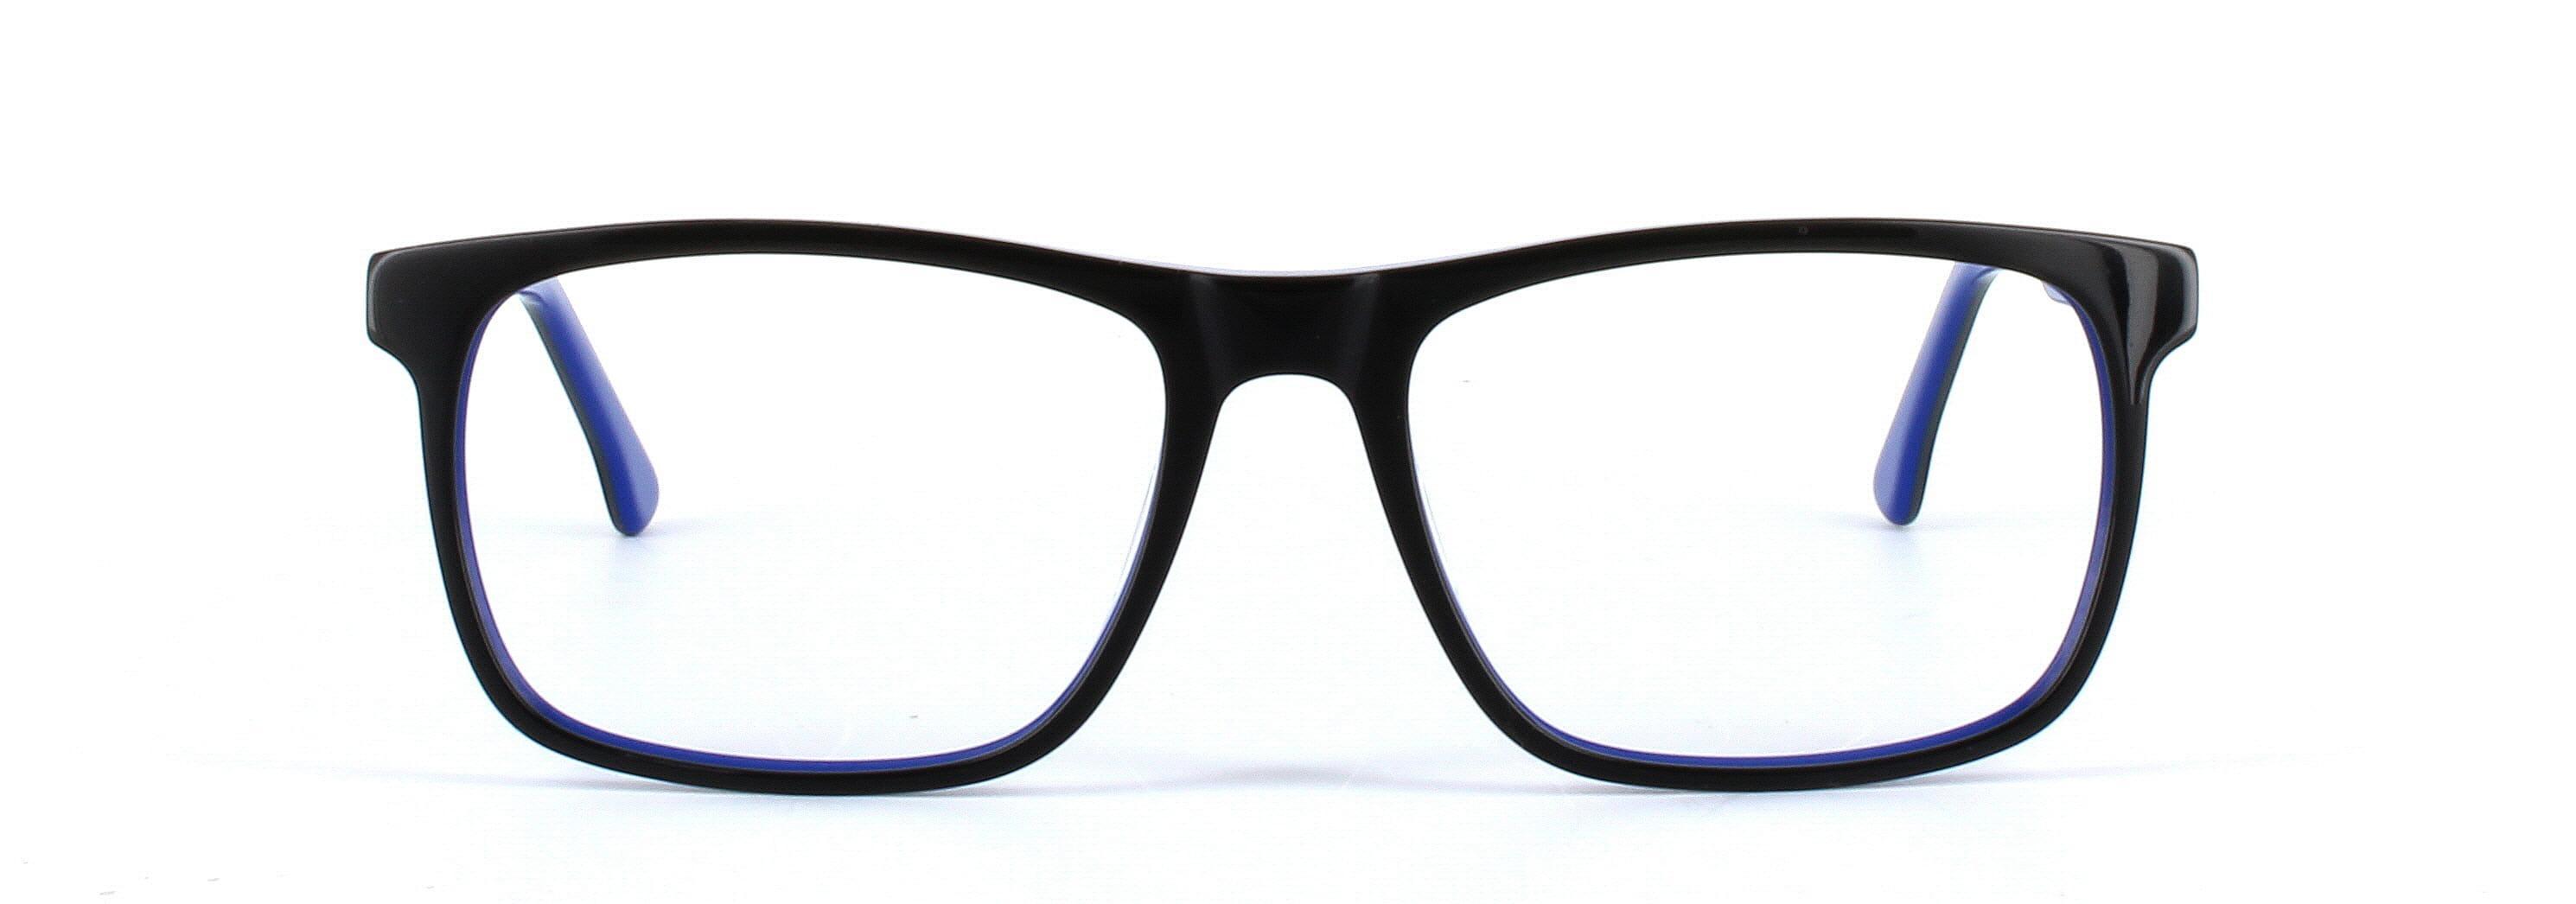 Ashington Black Full Rim Square Plastic Glasses - Image View 5